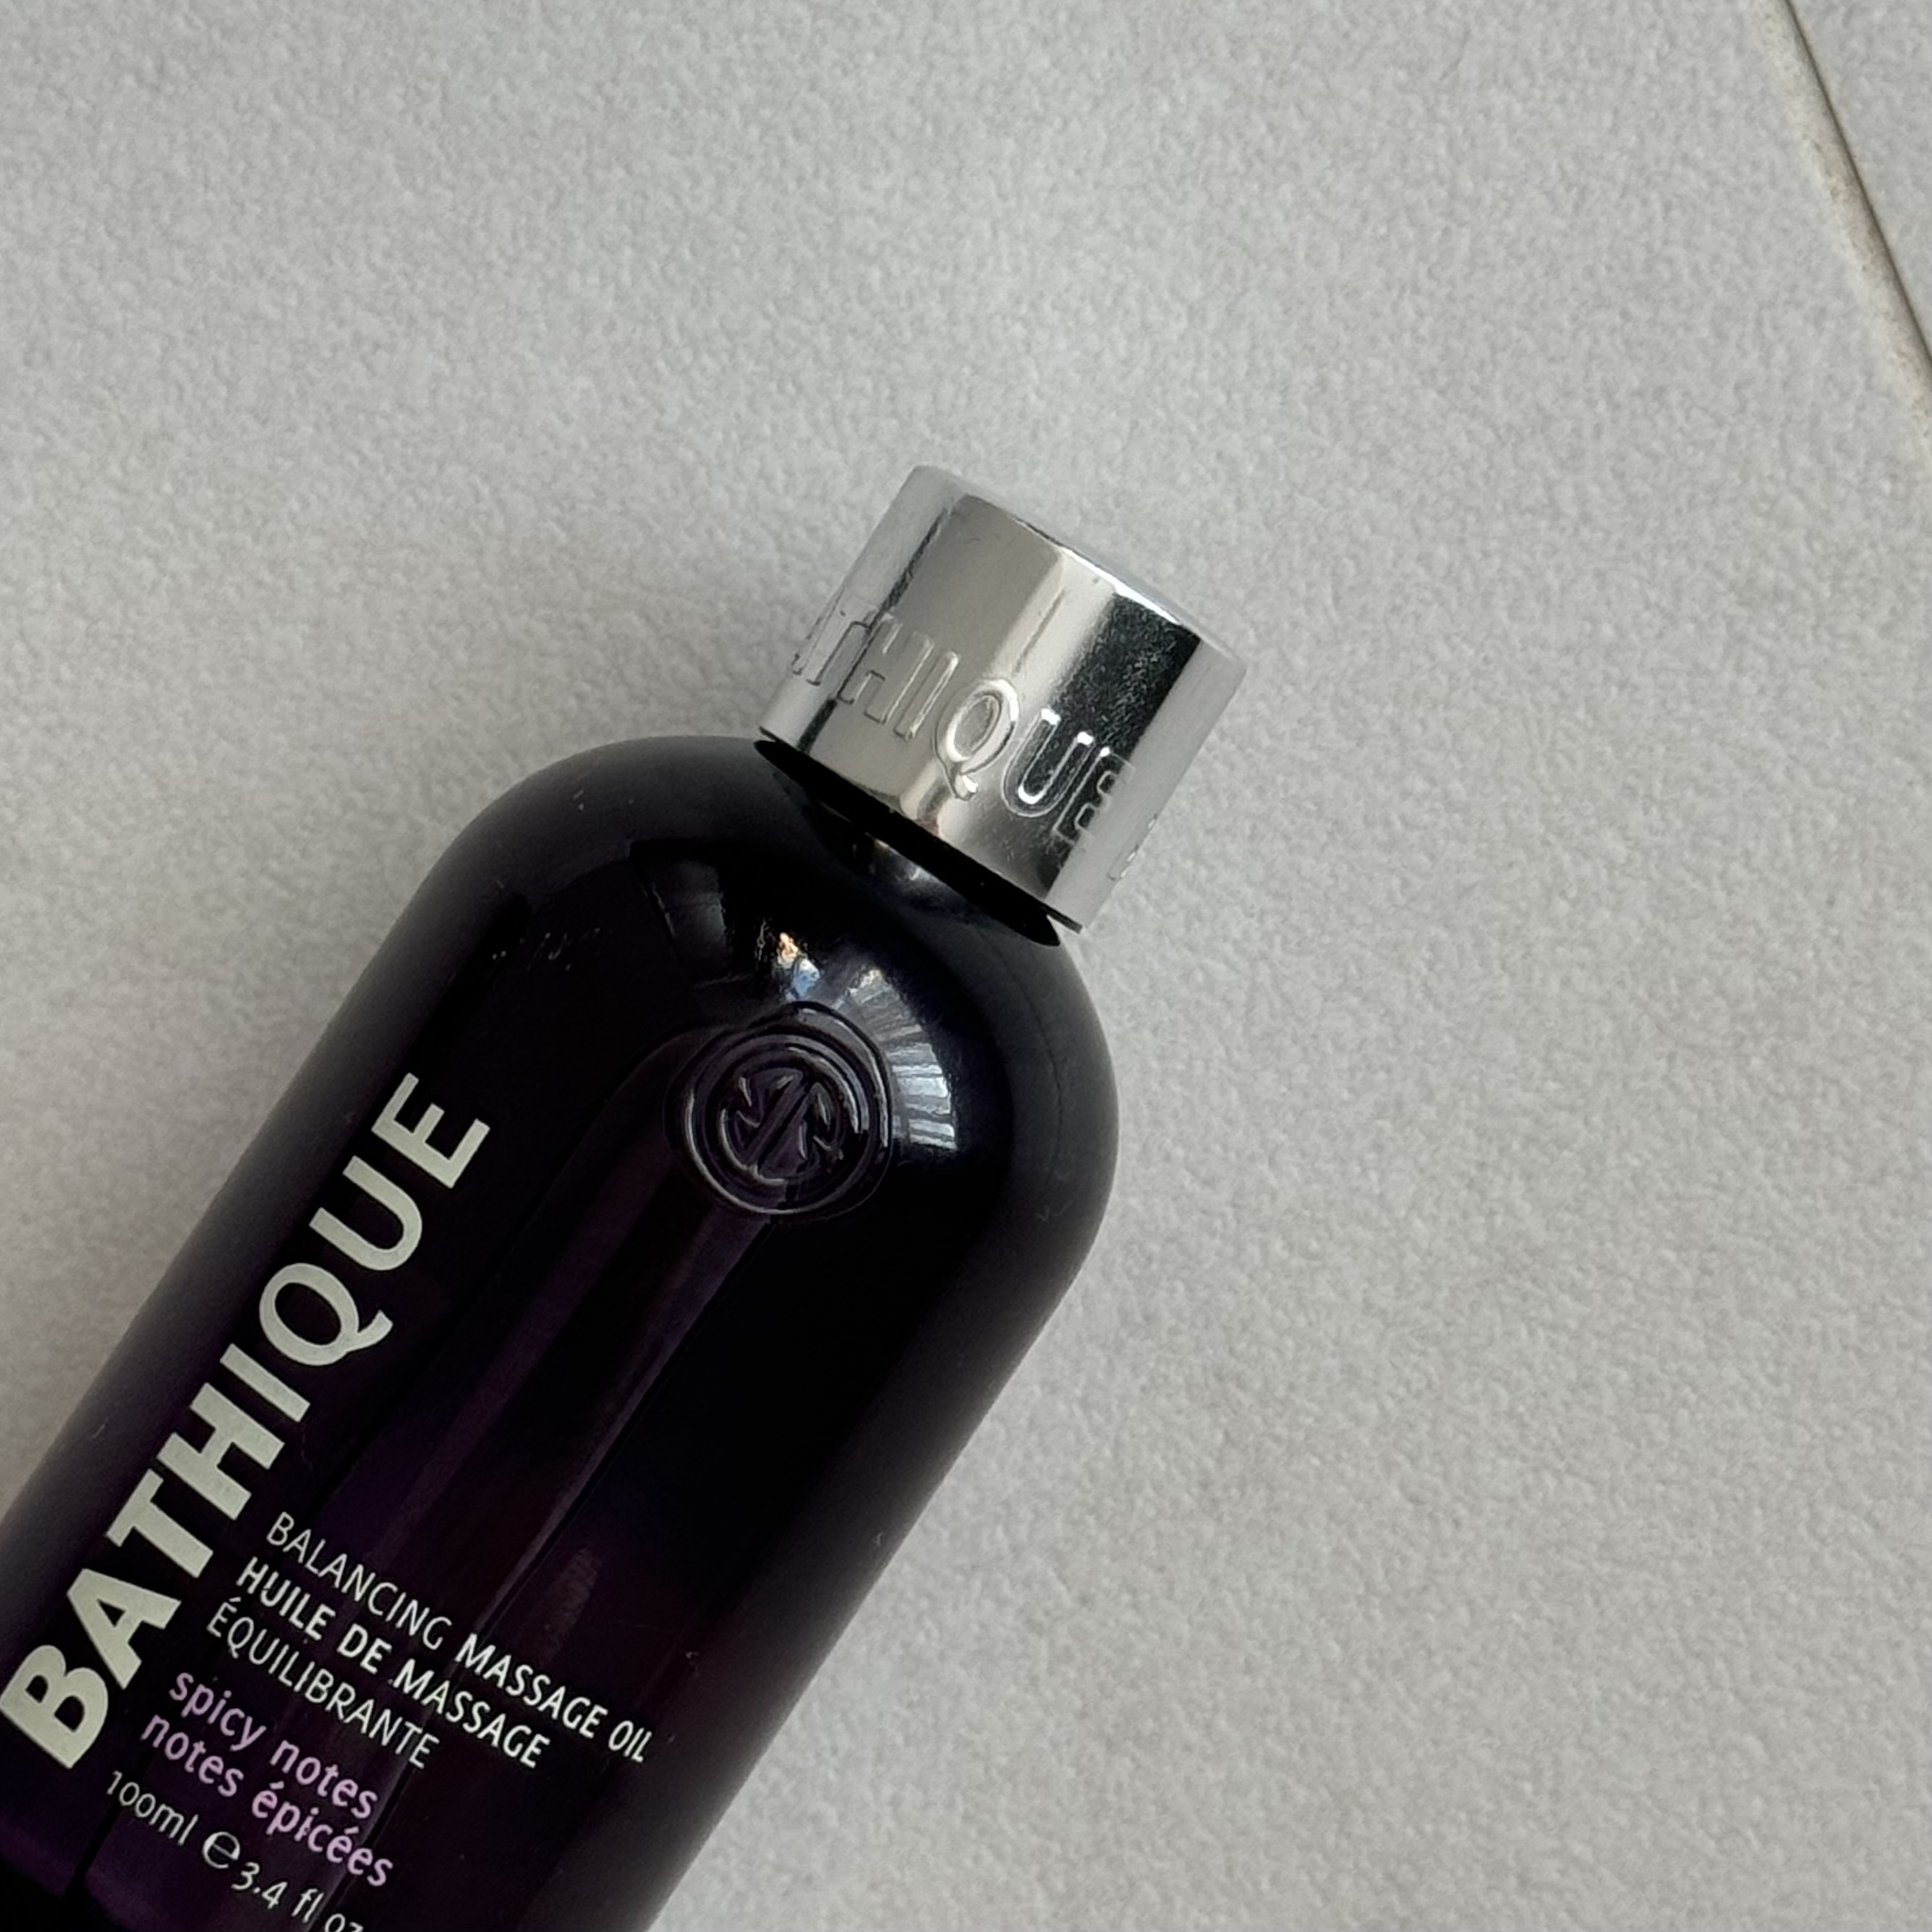 Bathique Balancing Massage Oil